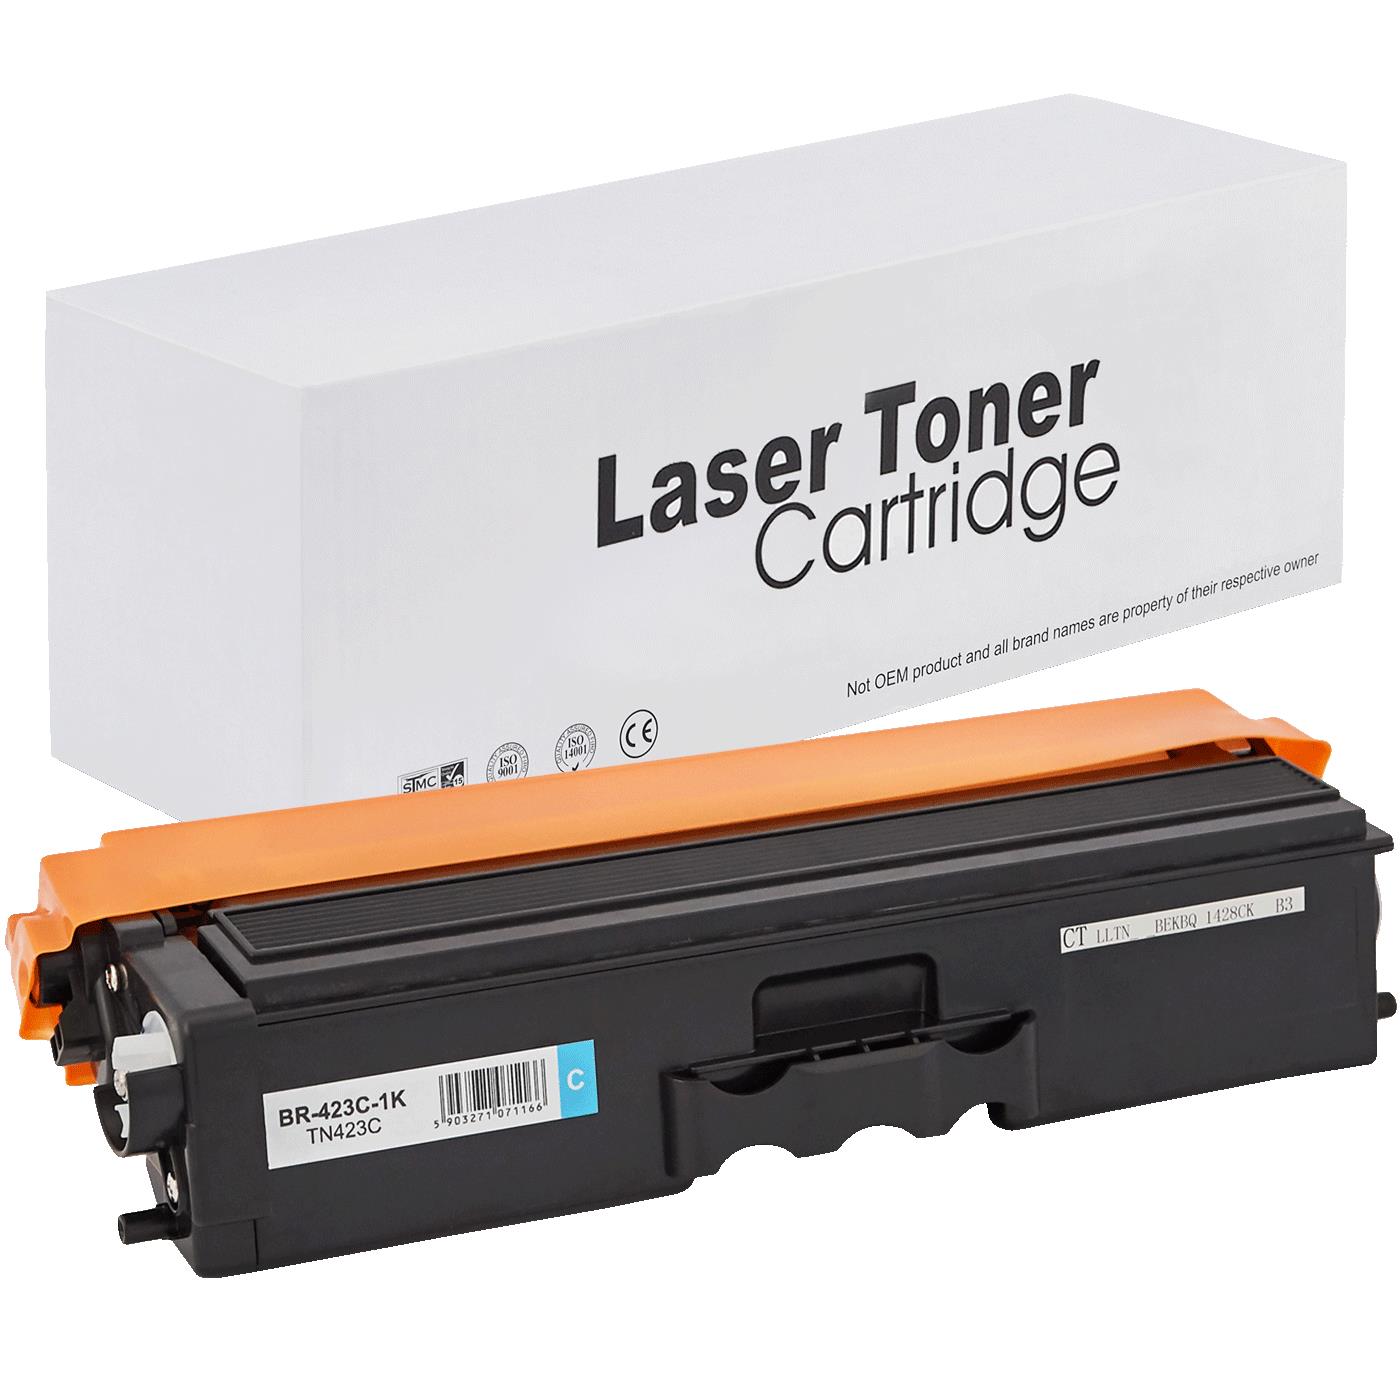 съвместима тонер касета за принтери и печатащи устройства на Brother HL-L8360CDW Toner BR-423C | TN423C. Ниски цени, прецизно изпълнение, високо качество.